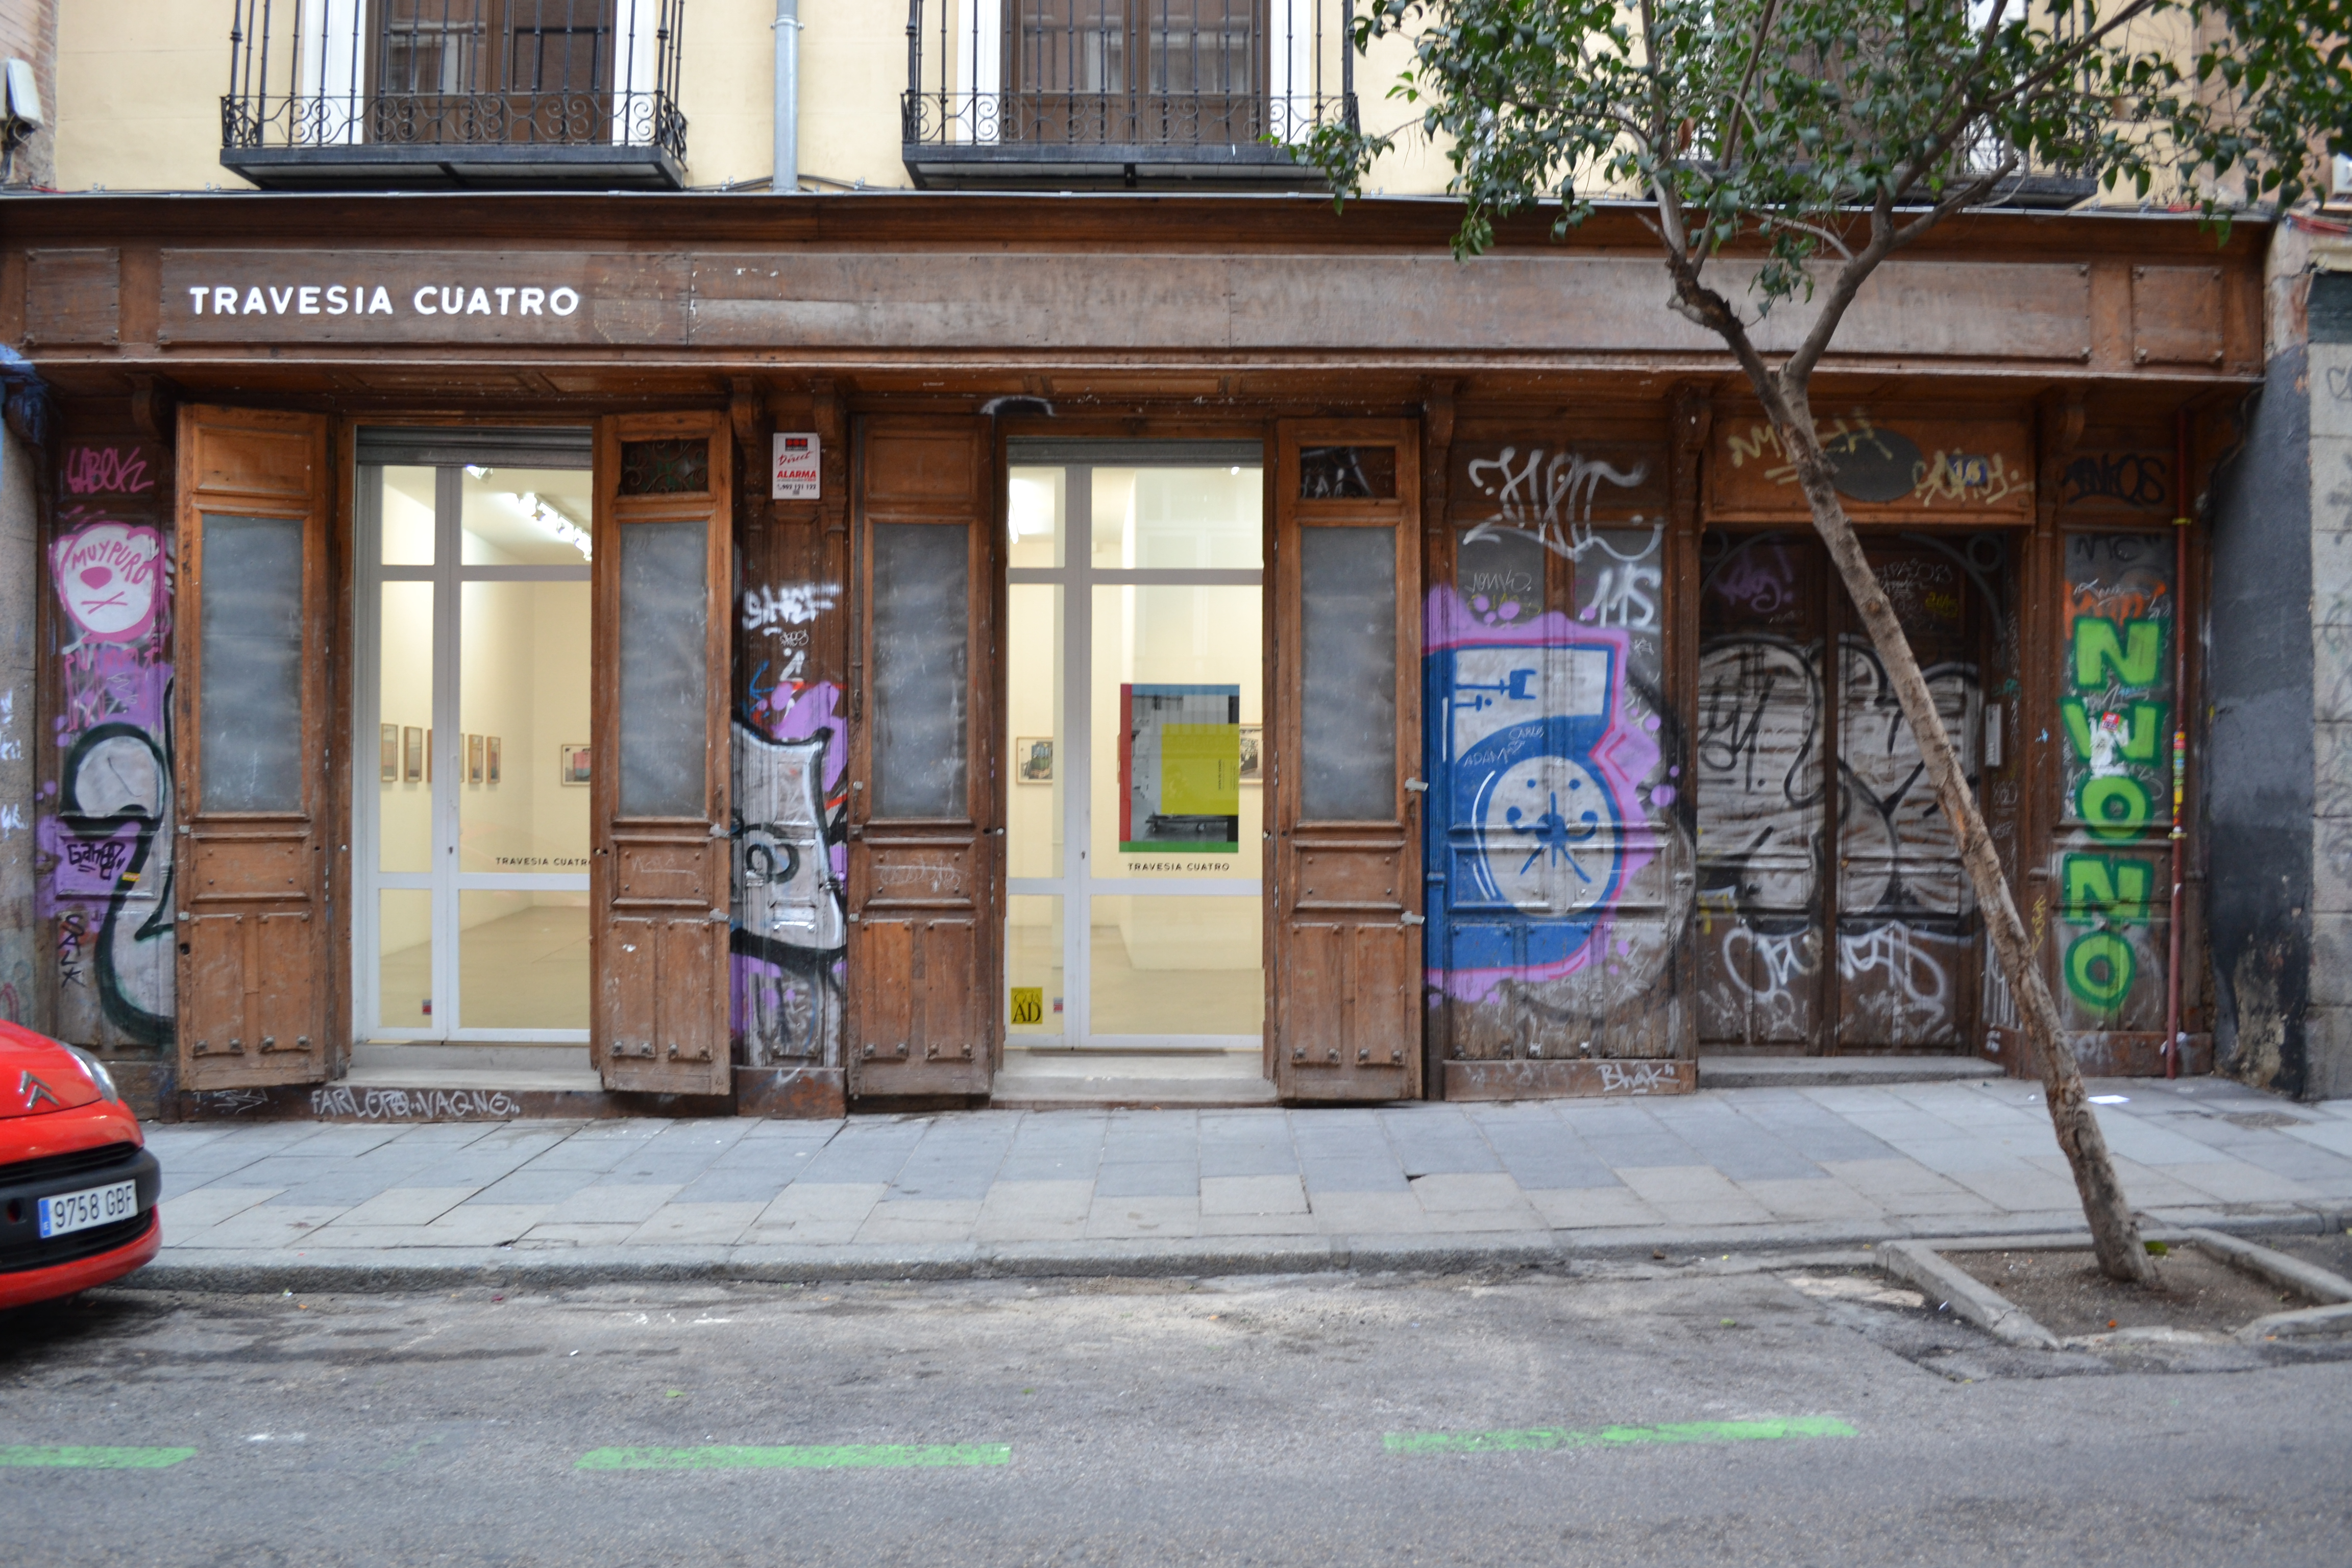 Galería Travesía Cuatro, en la calle San Mateo, 16 (Madrid). Foto: Unai Mezcua